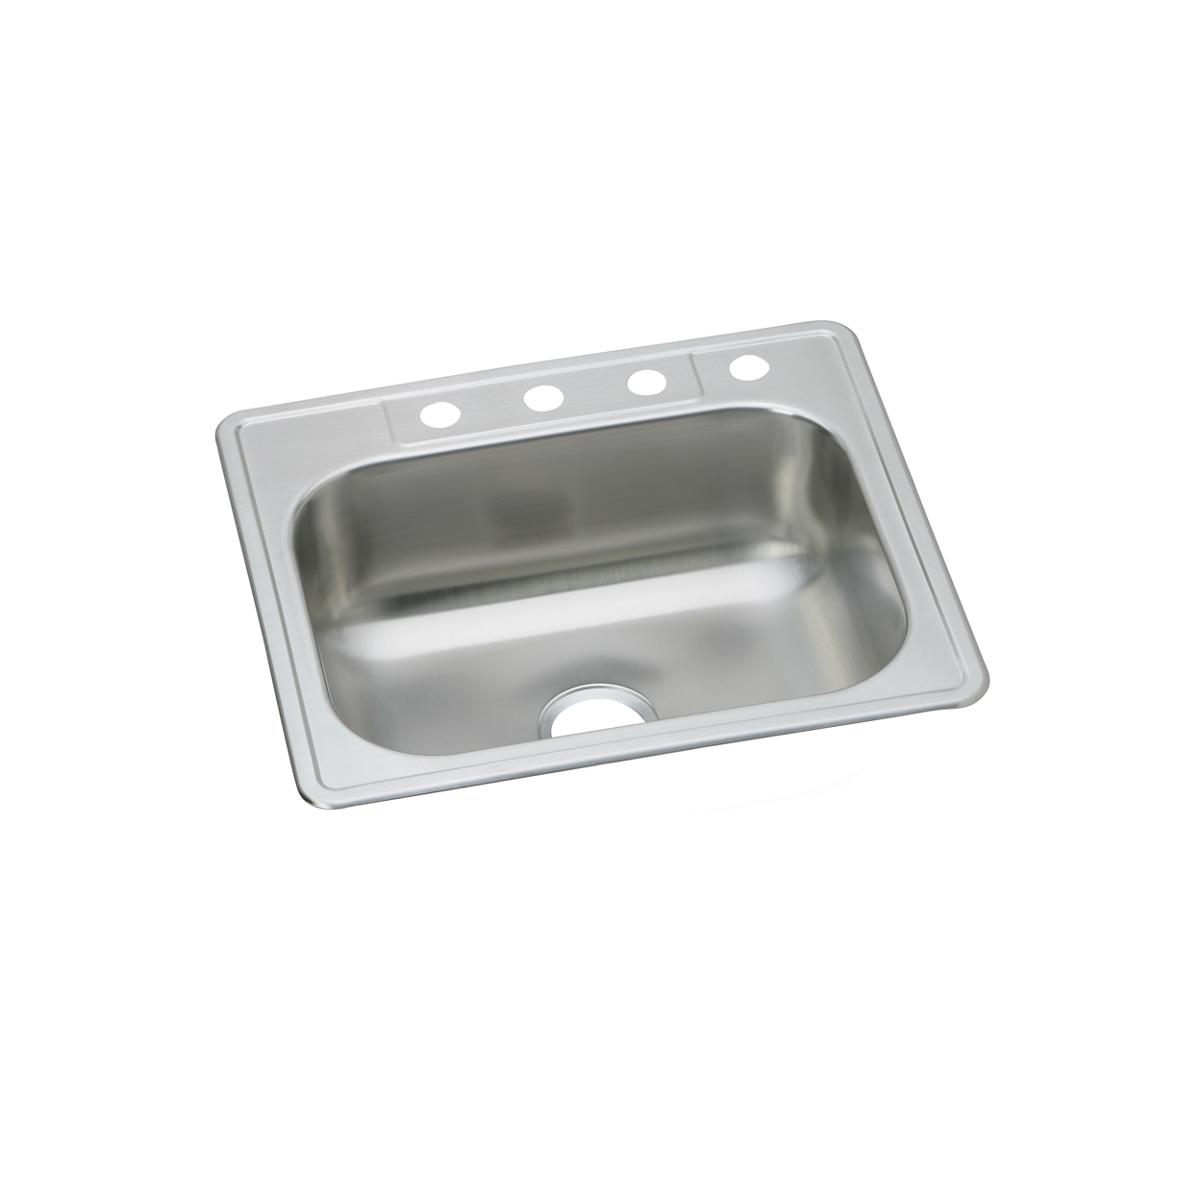 Elkay Stainless Steel Single Bowl Drop-in Sink 1137